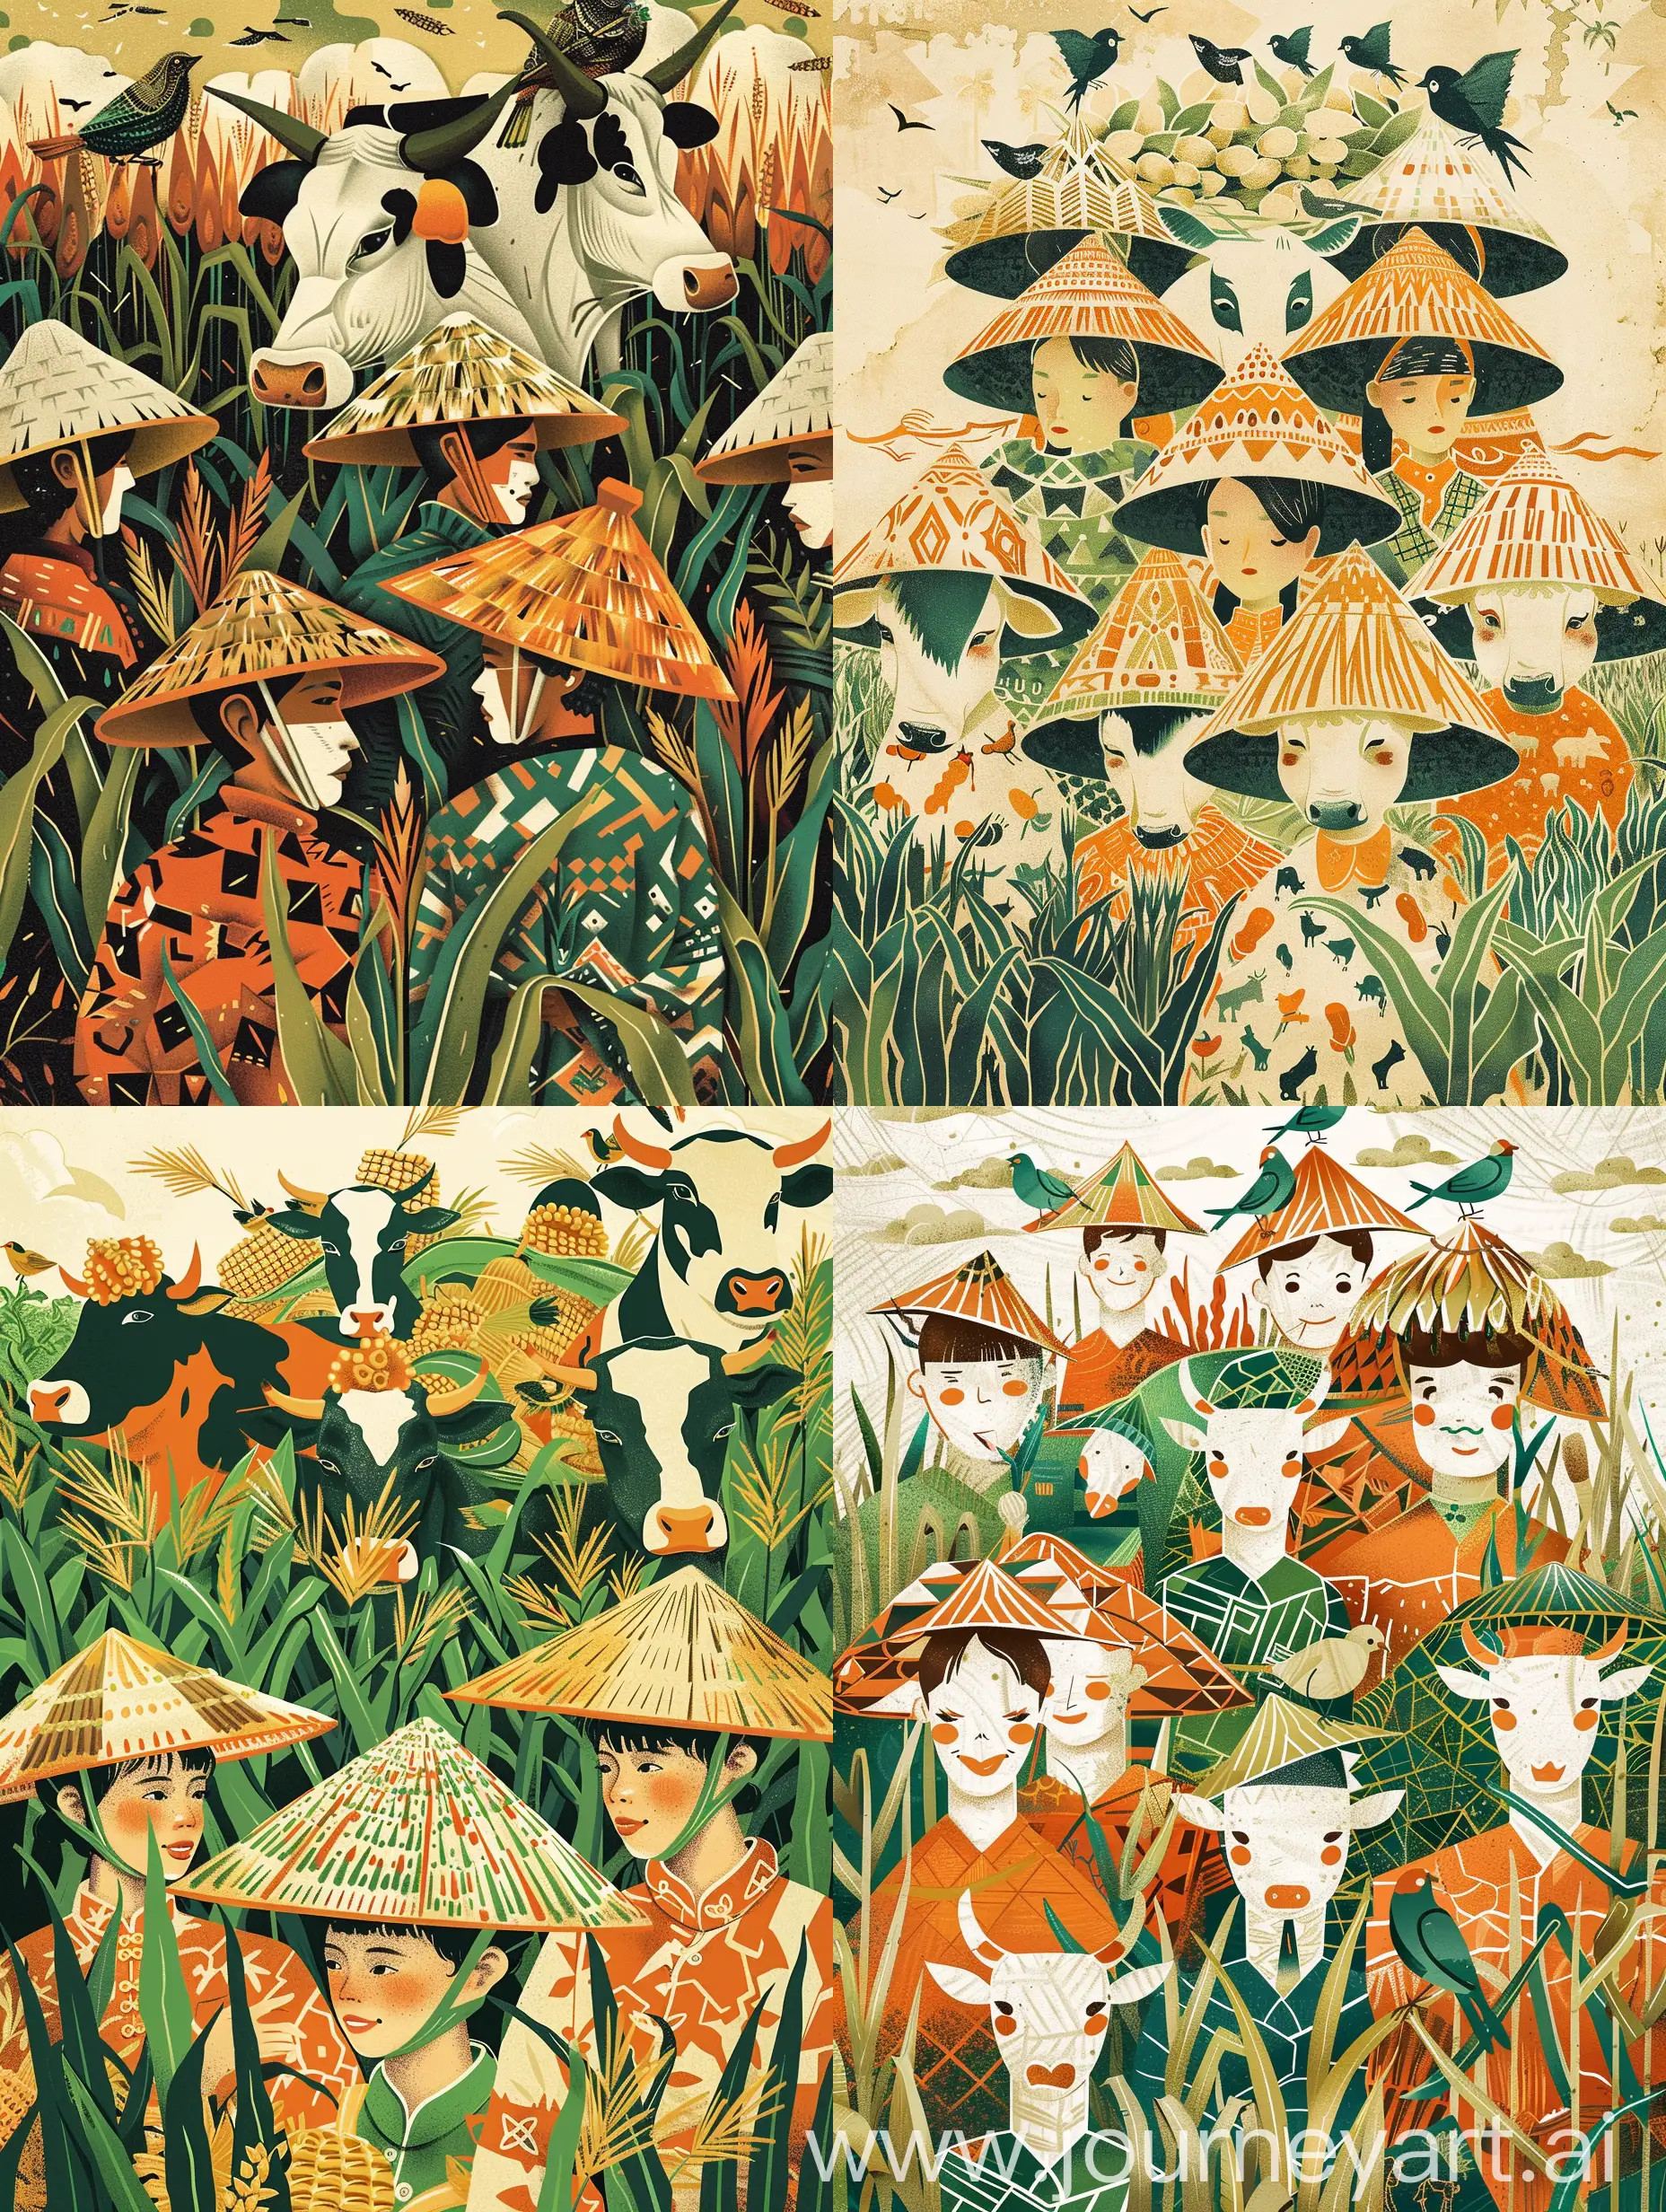 图形风格的插图，装饰画，一群农民戴着草帽，穿着民族风格的几何服装，劳动的动态，如意草卷纹，玉米，牛和鸟的图案在头上，插图风格的灵感来自民间艺术剪纸，以越南传统、橙色和绿色的风格为特色，描绘劳动，杂货艺术，精致的框架，清晰的轮廓，民间主题--ar 128:91-niji 5-风格的表达